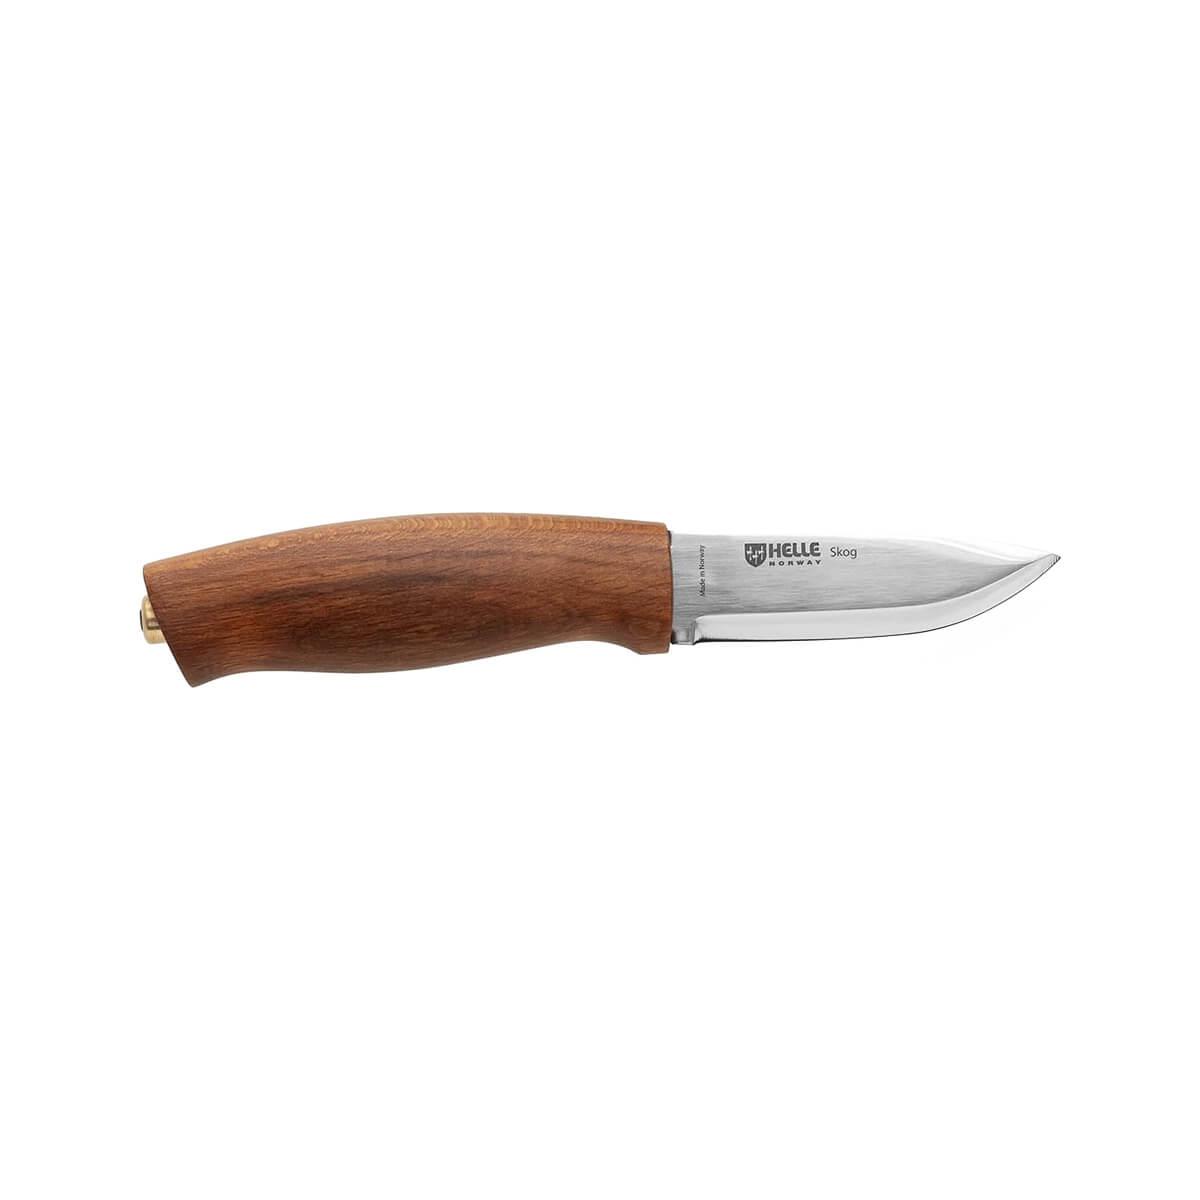  Skog Knife